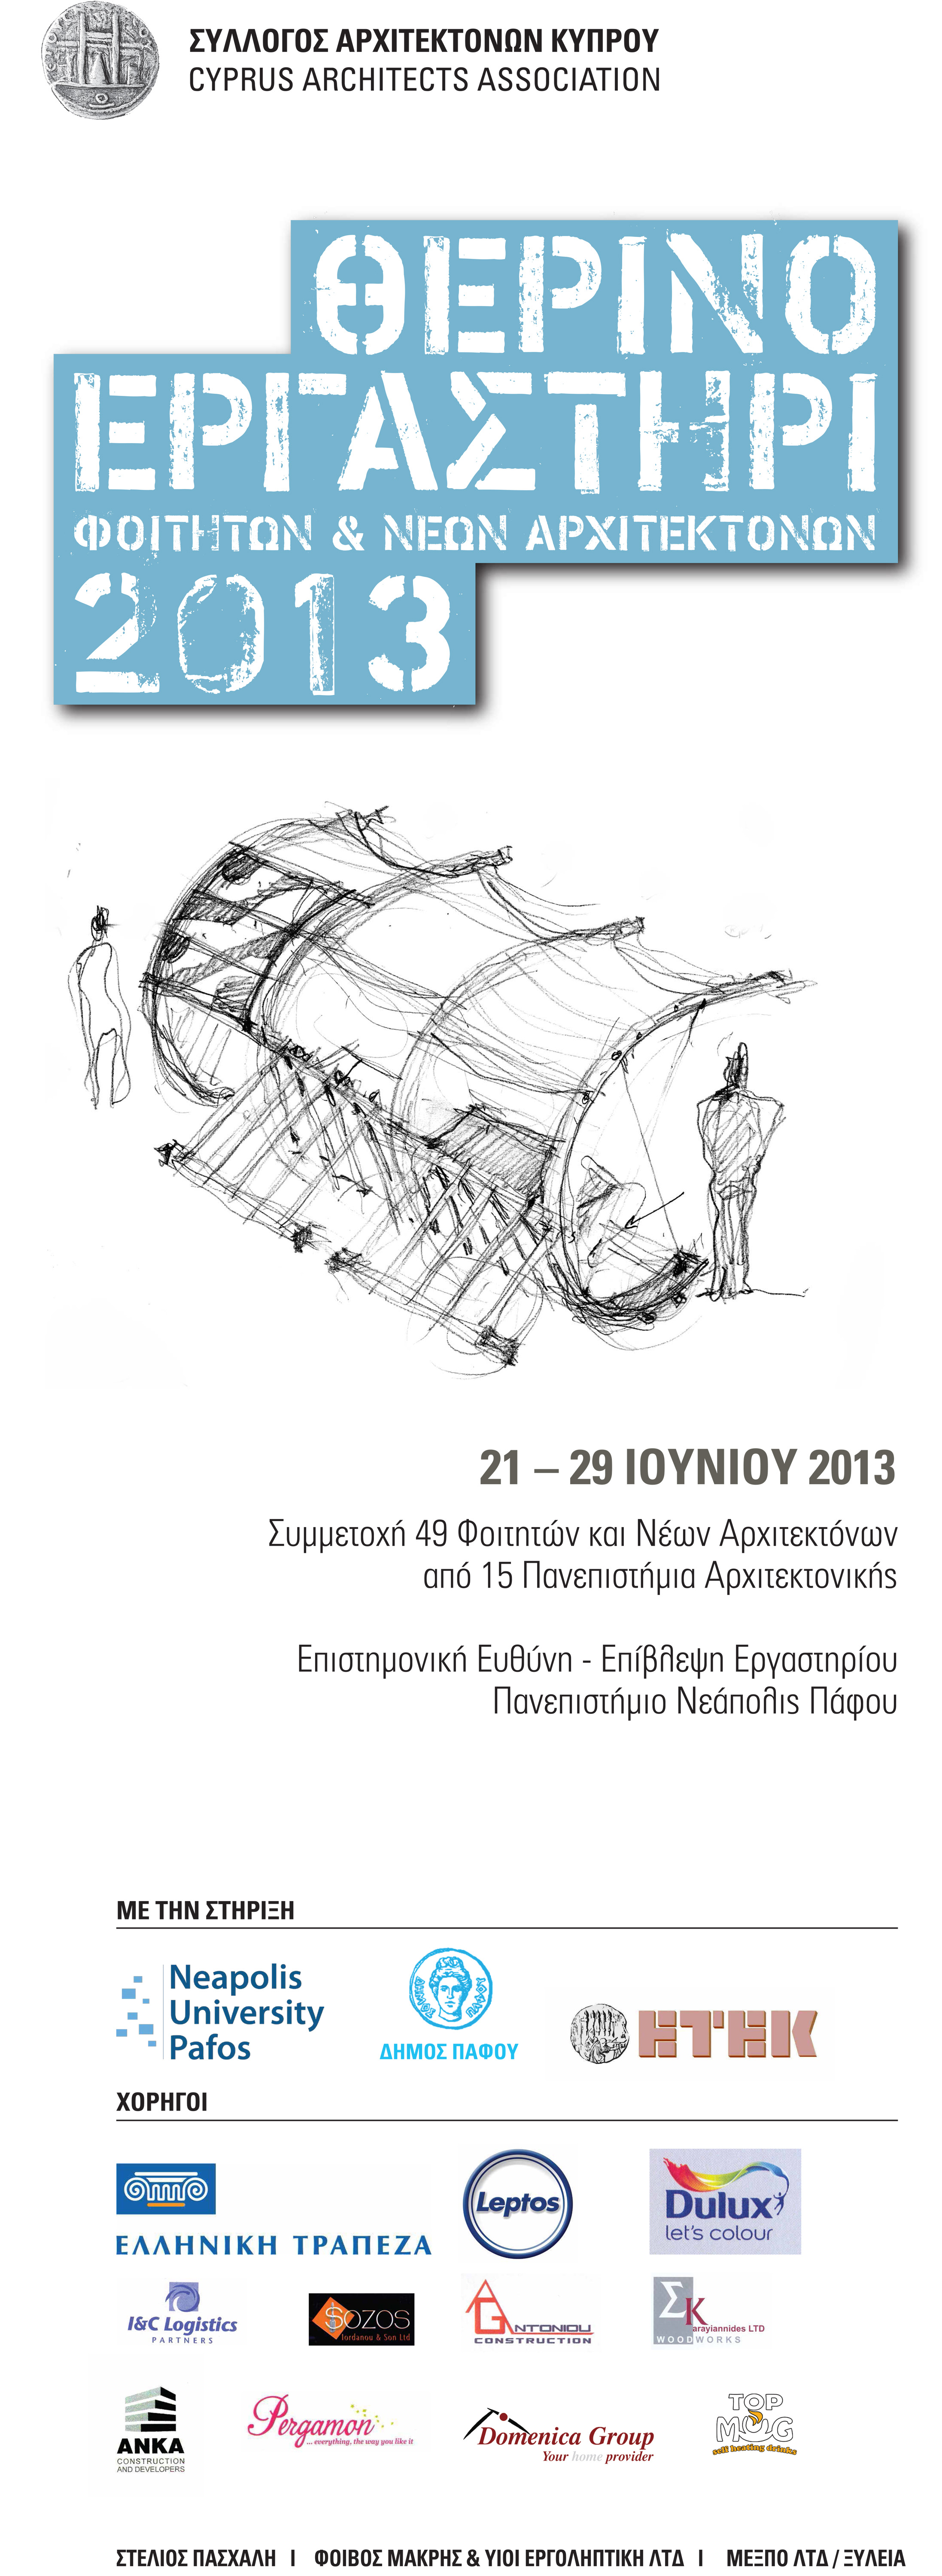 Θερινό Εργασήρι Συλλόγου Αρχιτεκτόνων Κύπρου 2013 στο Νεάπολις